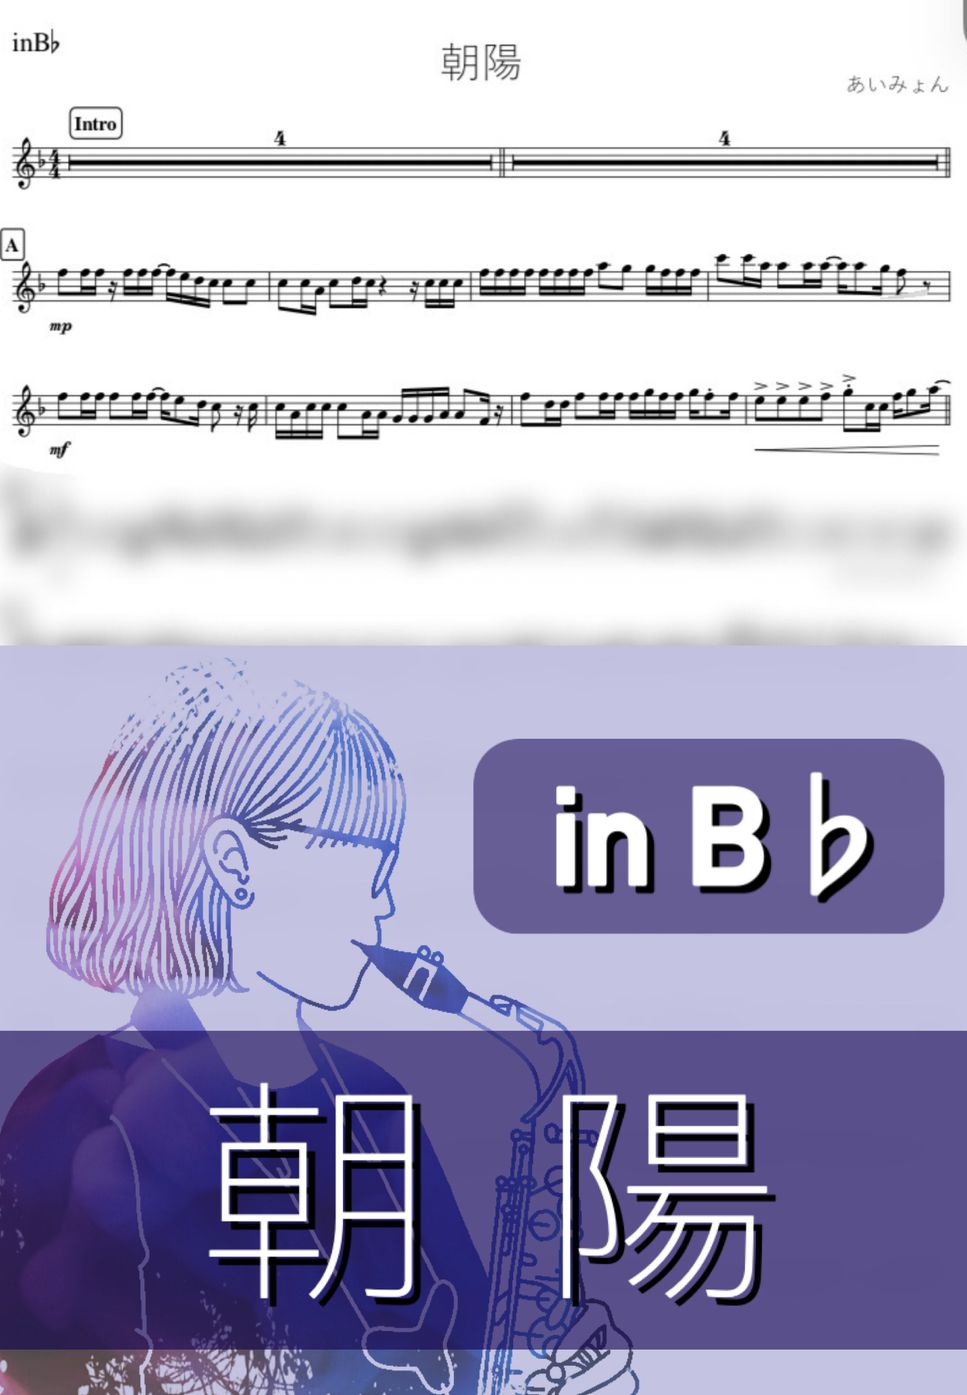 あいみょん - 朝陽 (B♭) by kanamusic